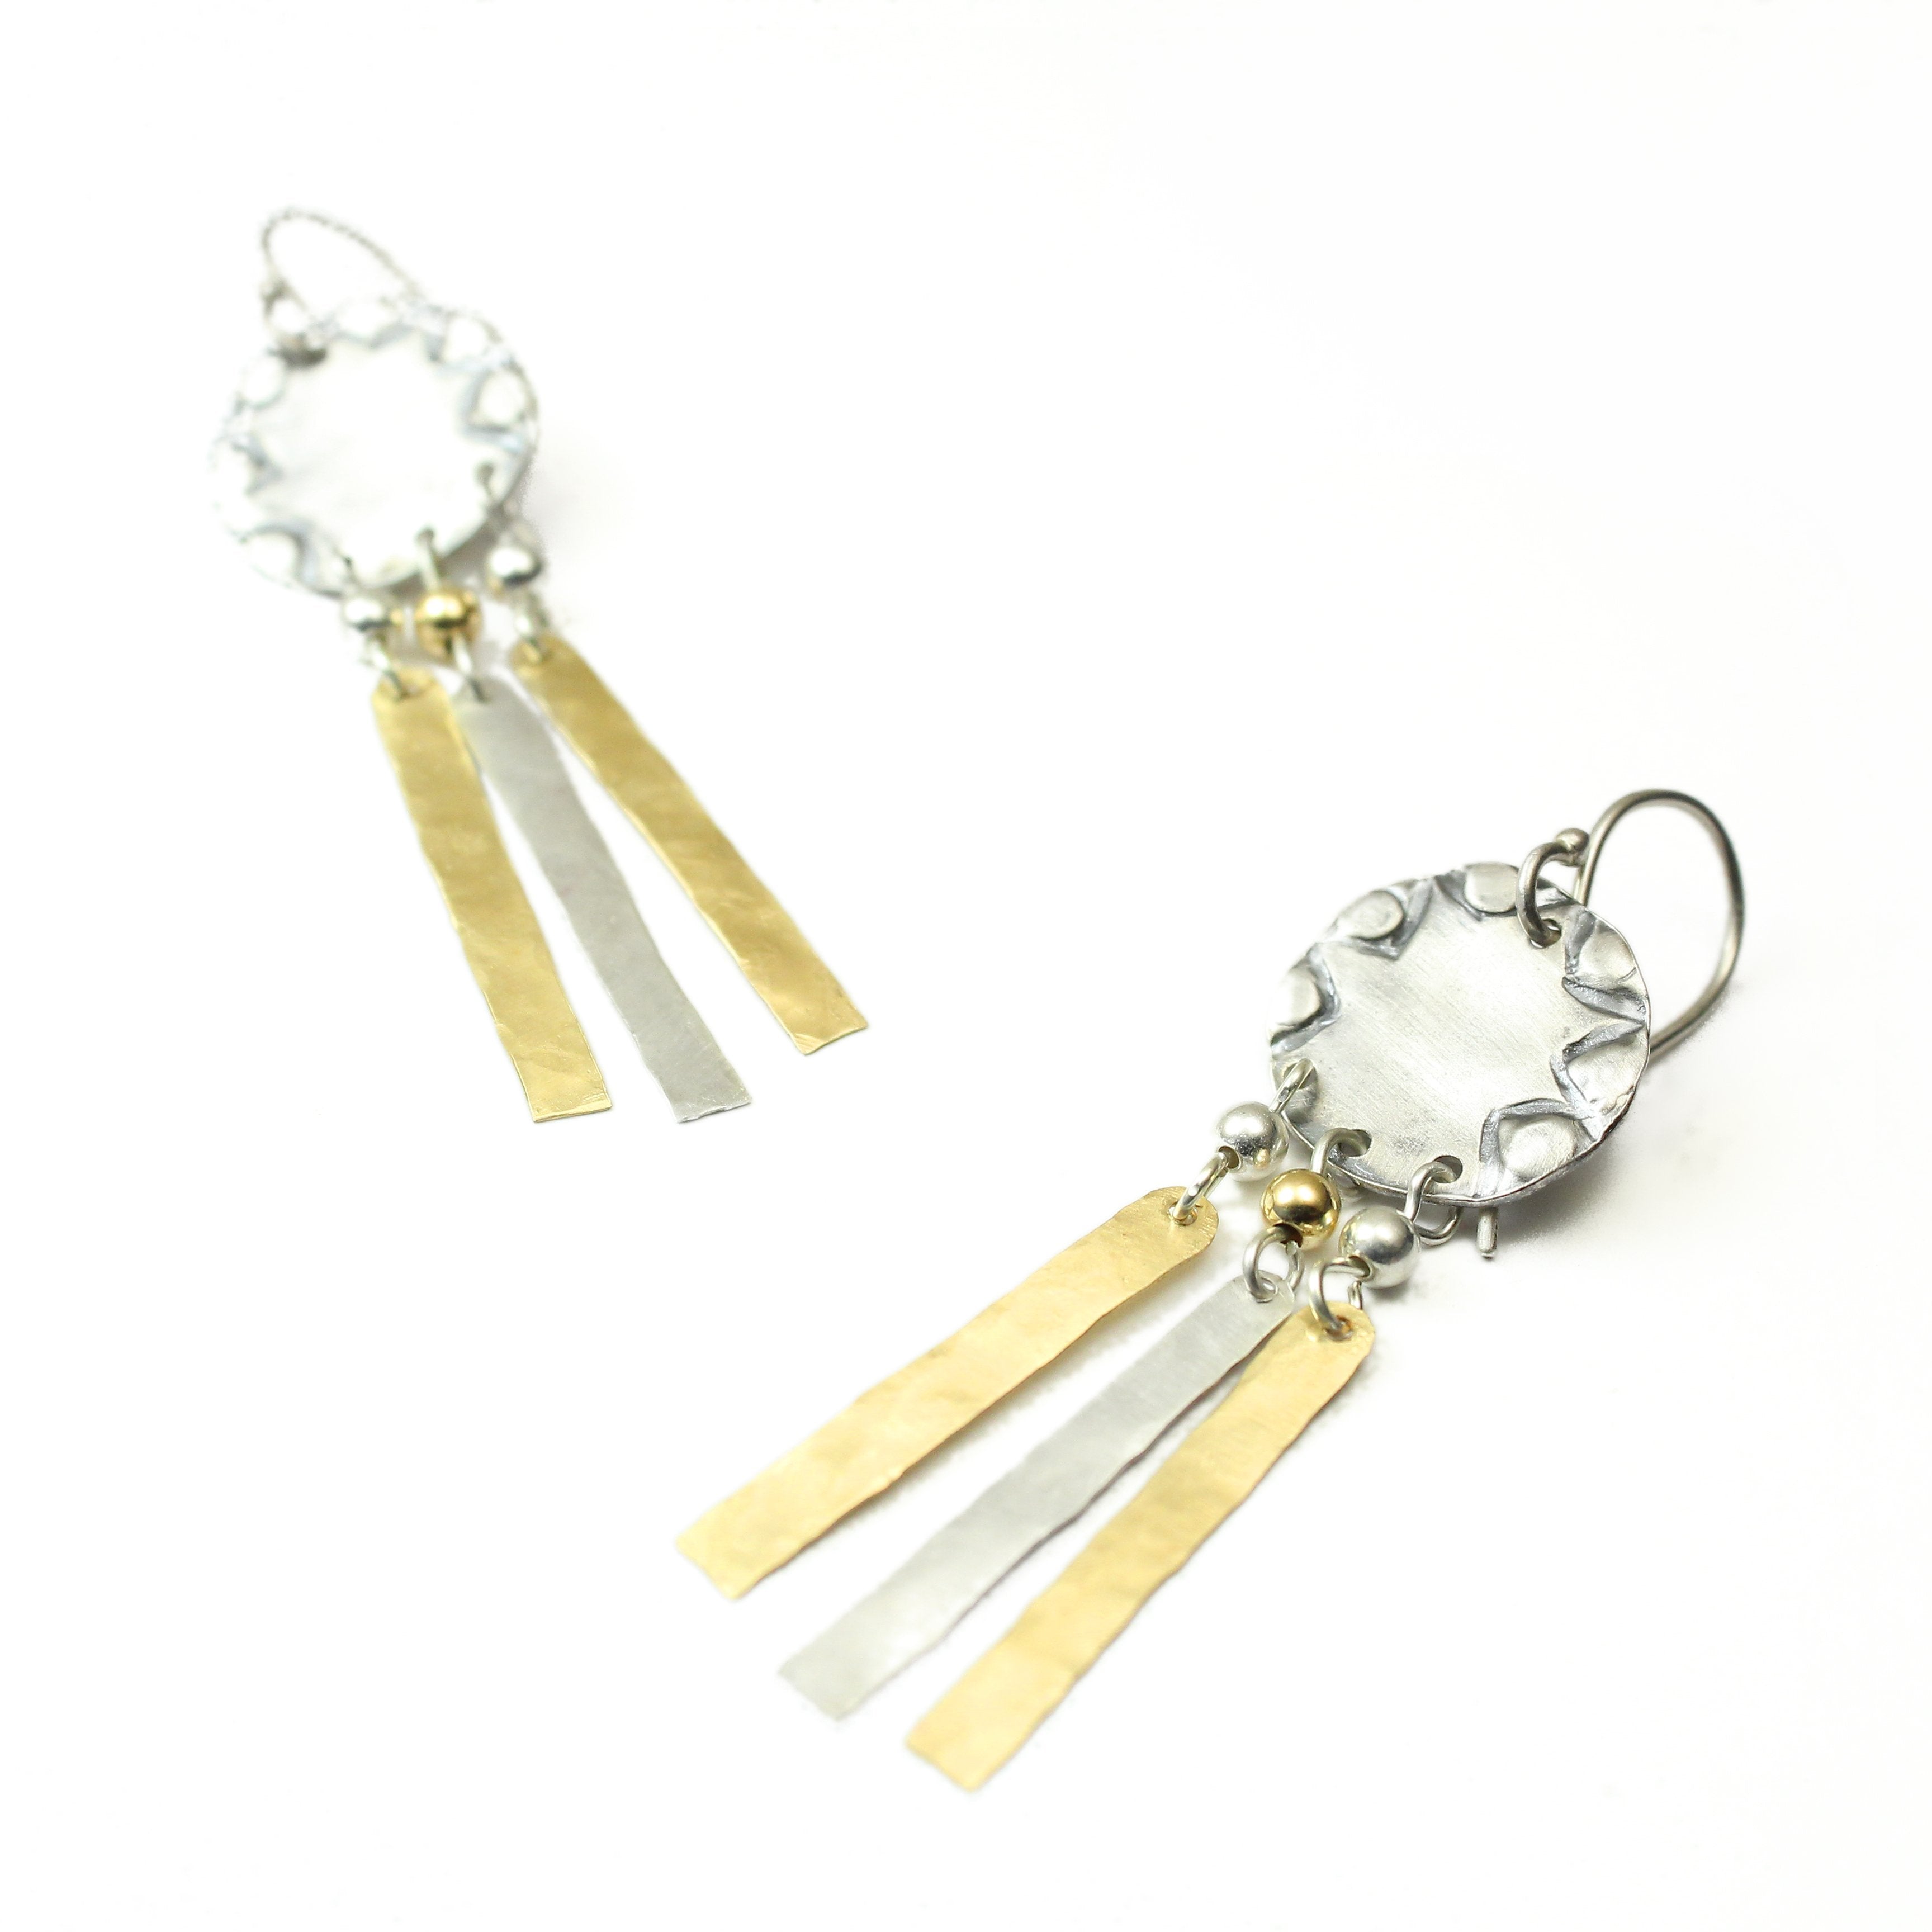 Silver & Gold filled Circular Medium Size Earrings - Shulamit Kanter